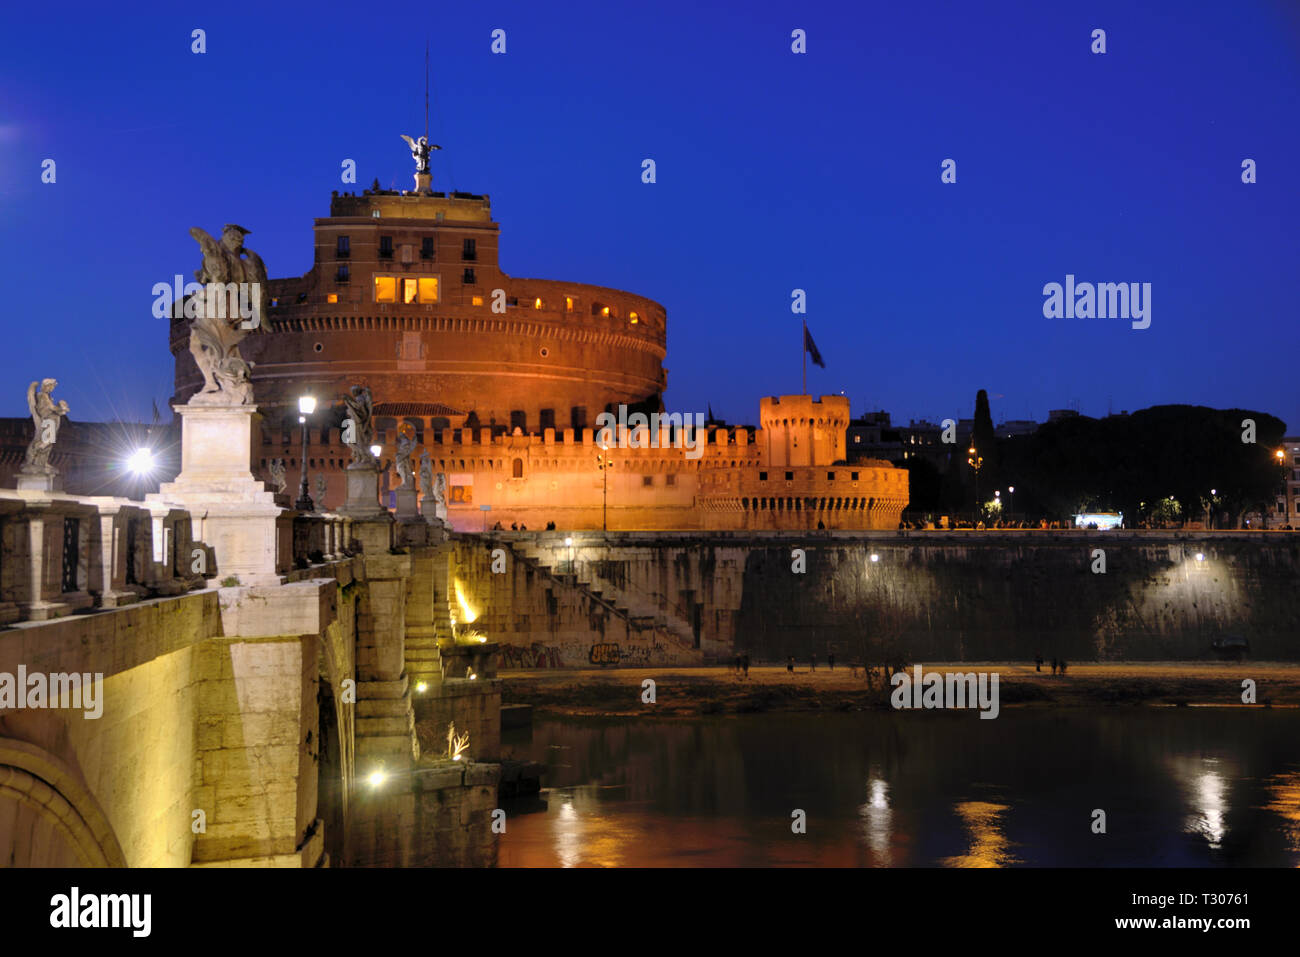 Castel Sant'Angelo château ou forteresse, alias le mausolée d'Hadrien (123-139MA), sur les rives du Tibre, dans la nuit, Rome Italie Banque D'Images